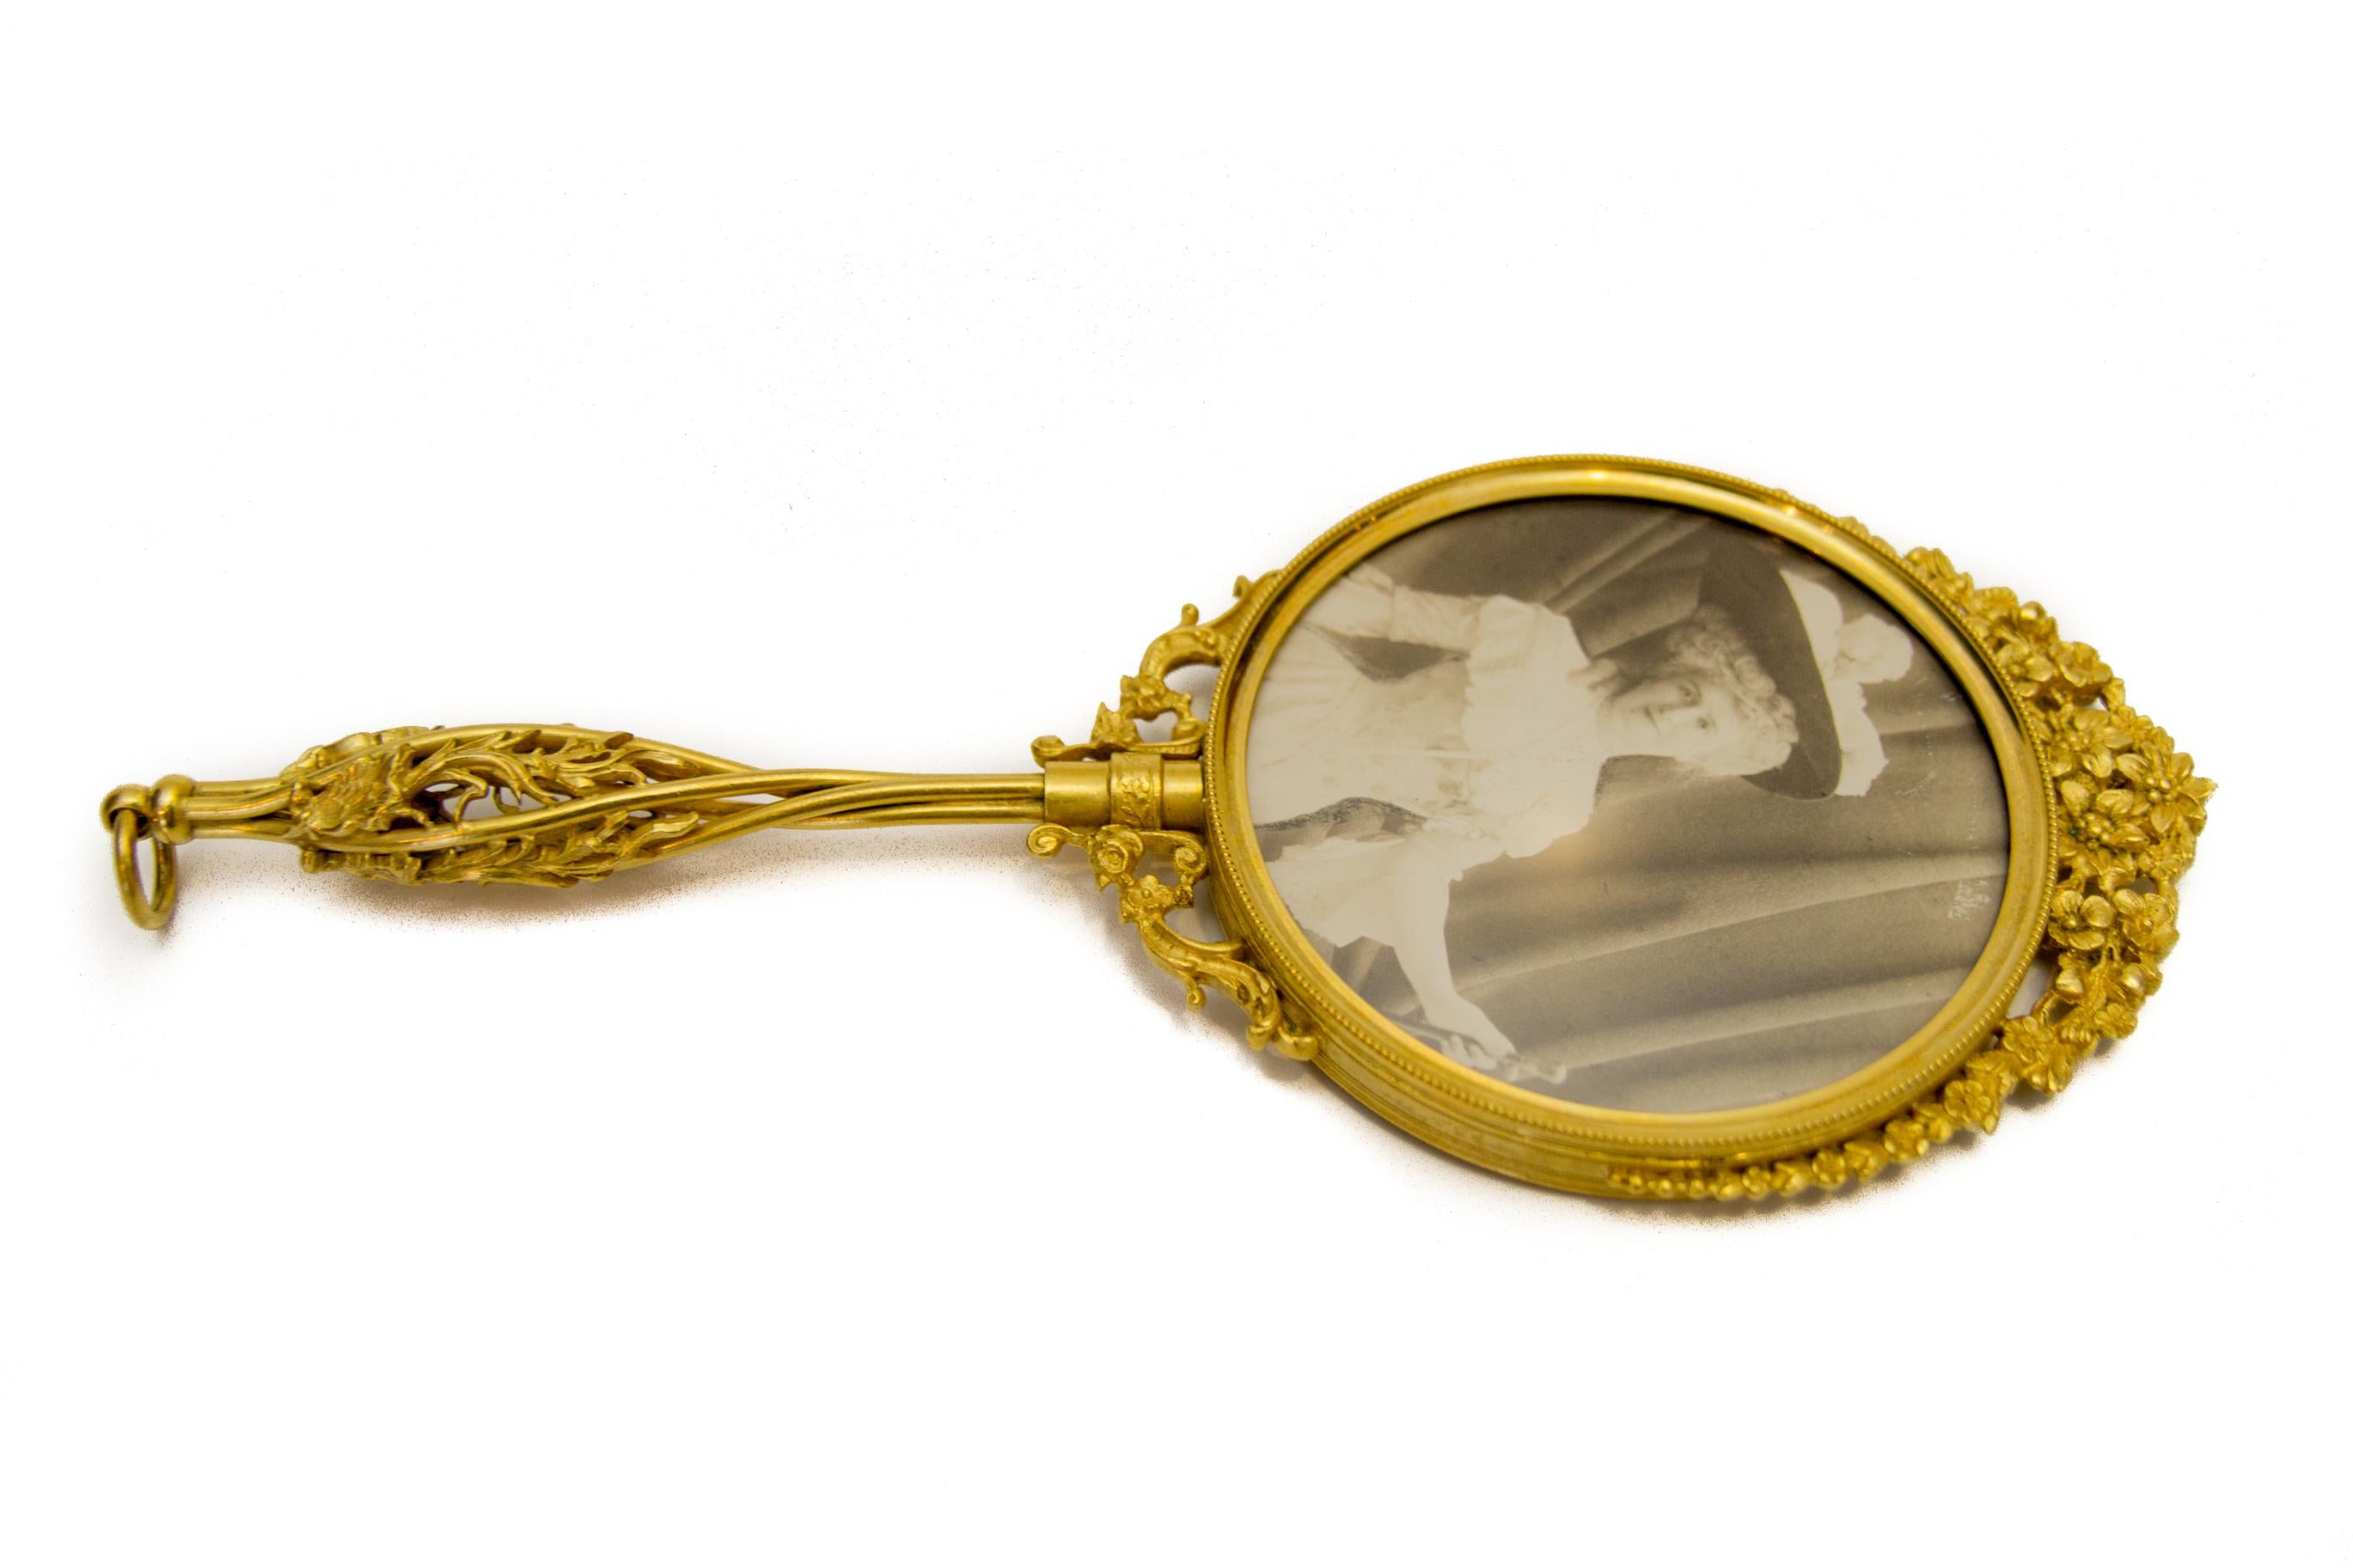 Französisch viktorianischen Stil Messing filigrane Hand Spiegel (Viktorianisch)